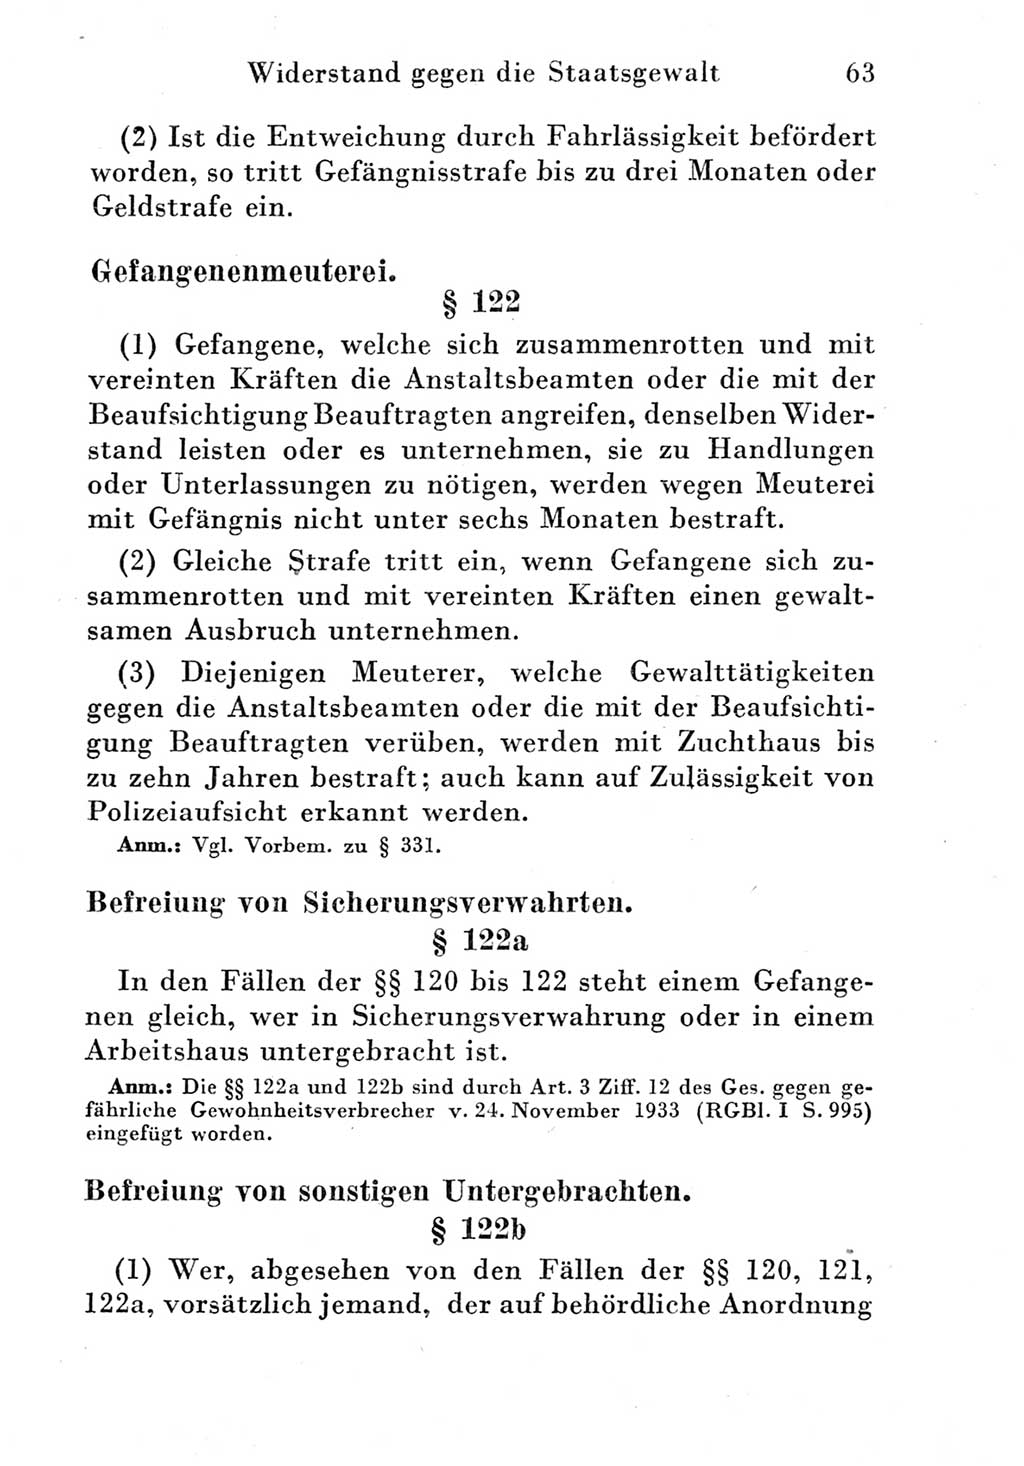 Strafgesetzbuch (StGB) und andere Strafgesetze [Deutsche Demokratische Republik (DDR)] 1951, Seite 63 (StGB Strafges. DDR 1951, S. 63)